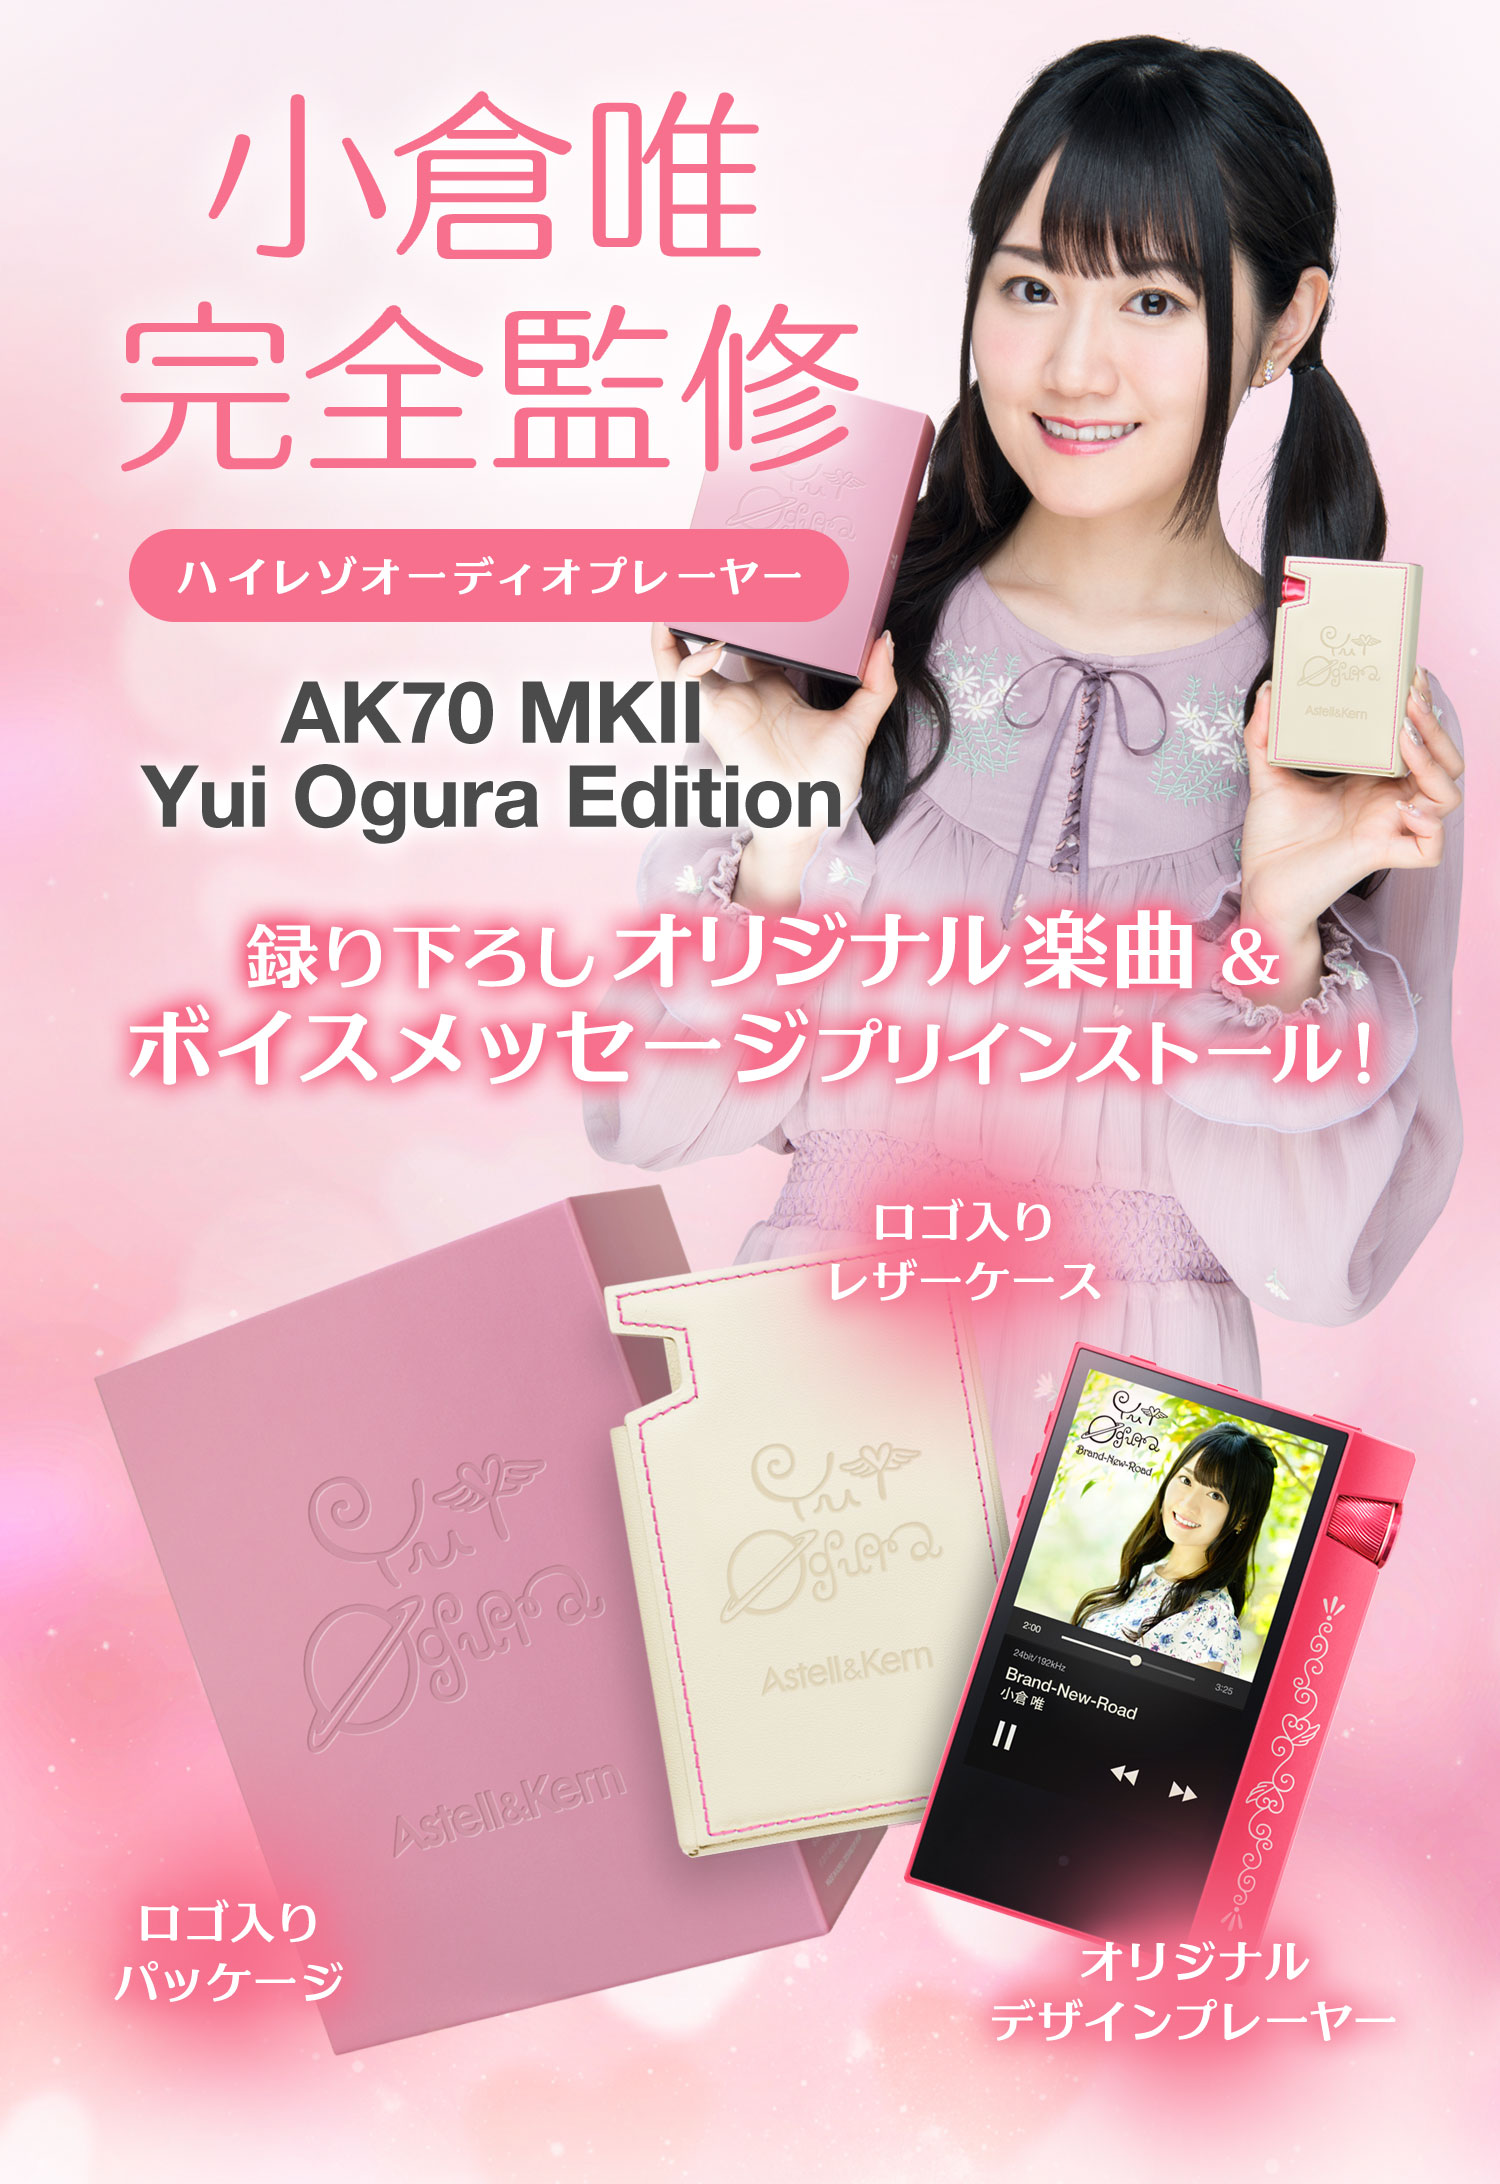 新作揃え AK70 Astell&Kern MKII Edition Ogura Yui ポータブルプレーヤー